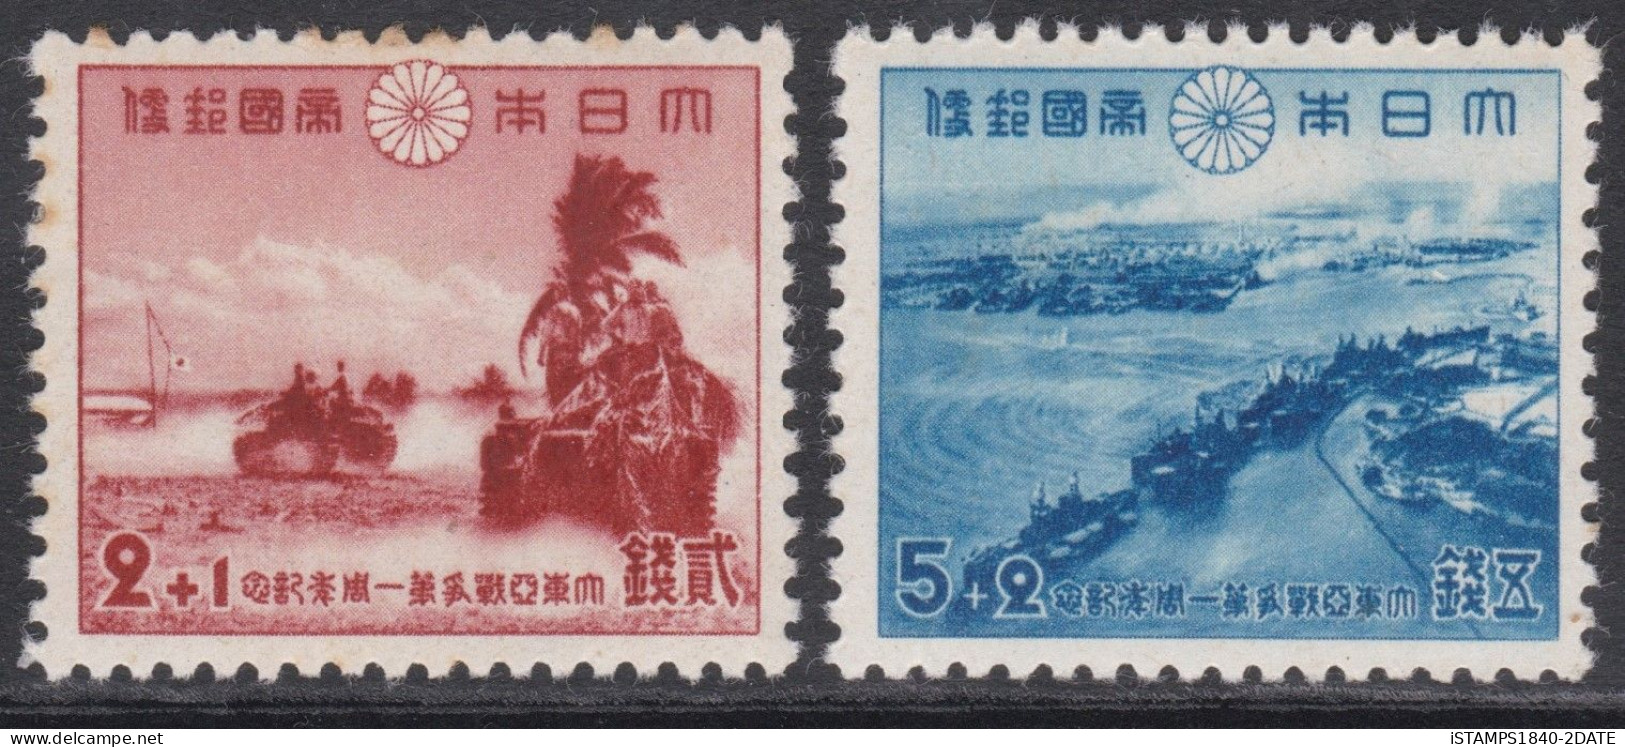 00437/ Japan 1942 Sg409/10 1st Anniversary Of Declaration Of War MNH - Ongebruikt